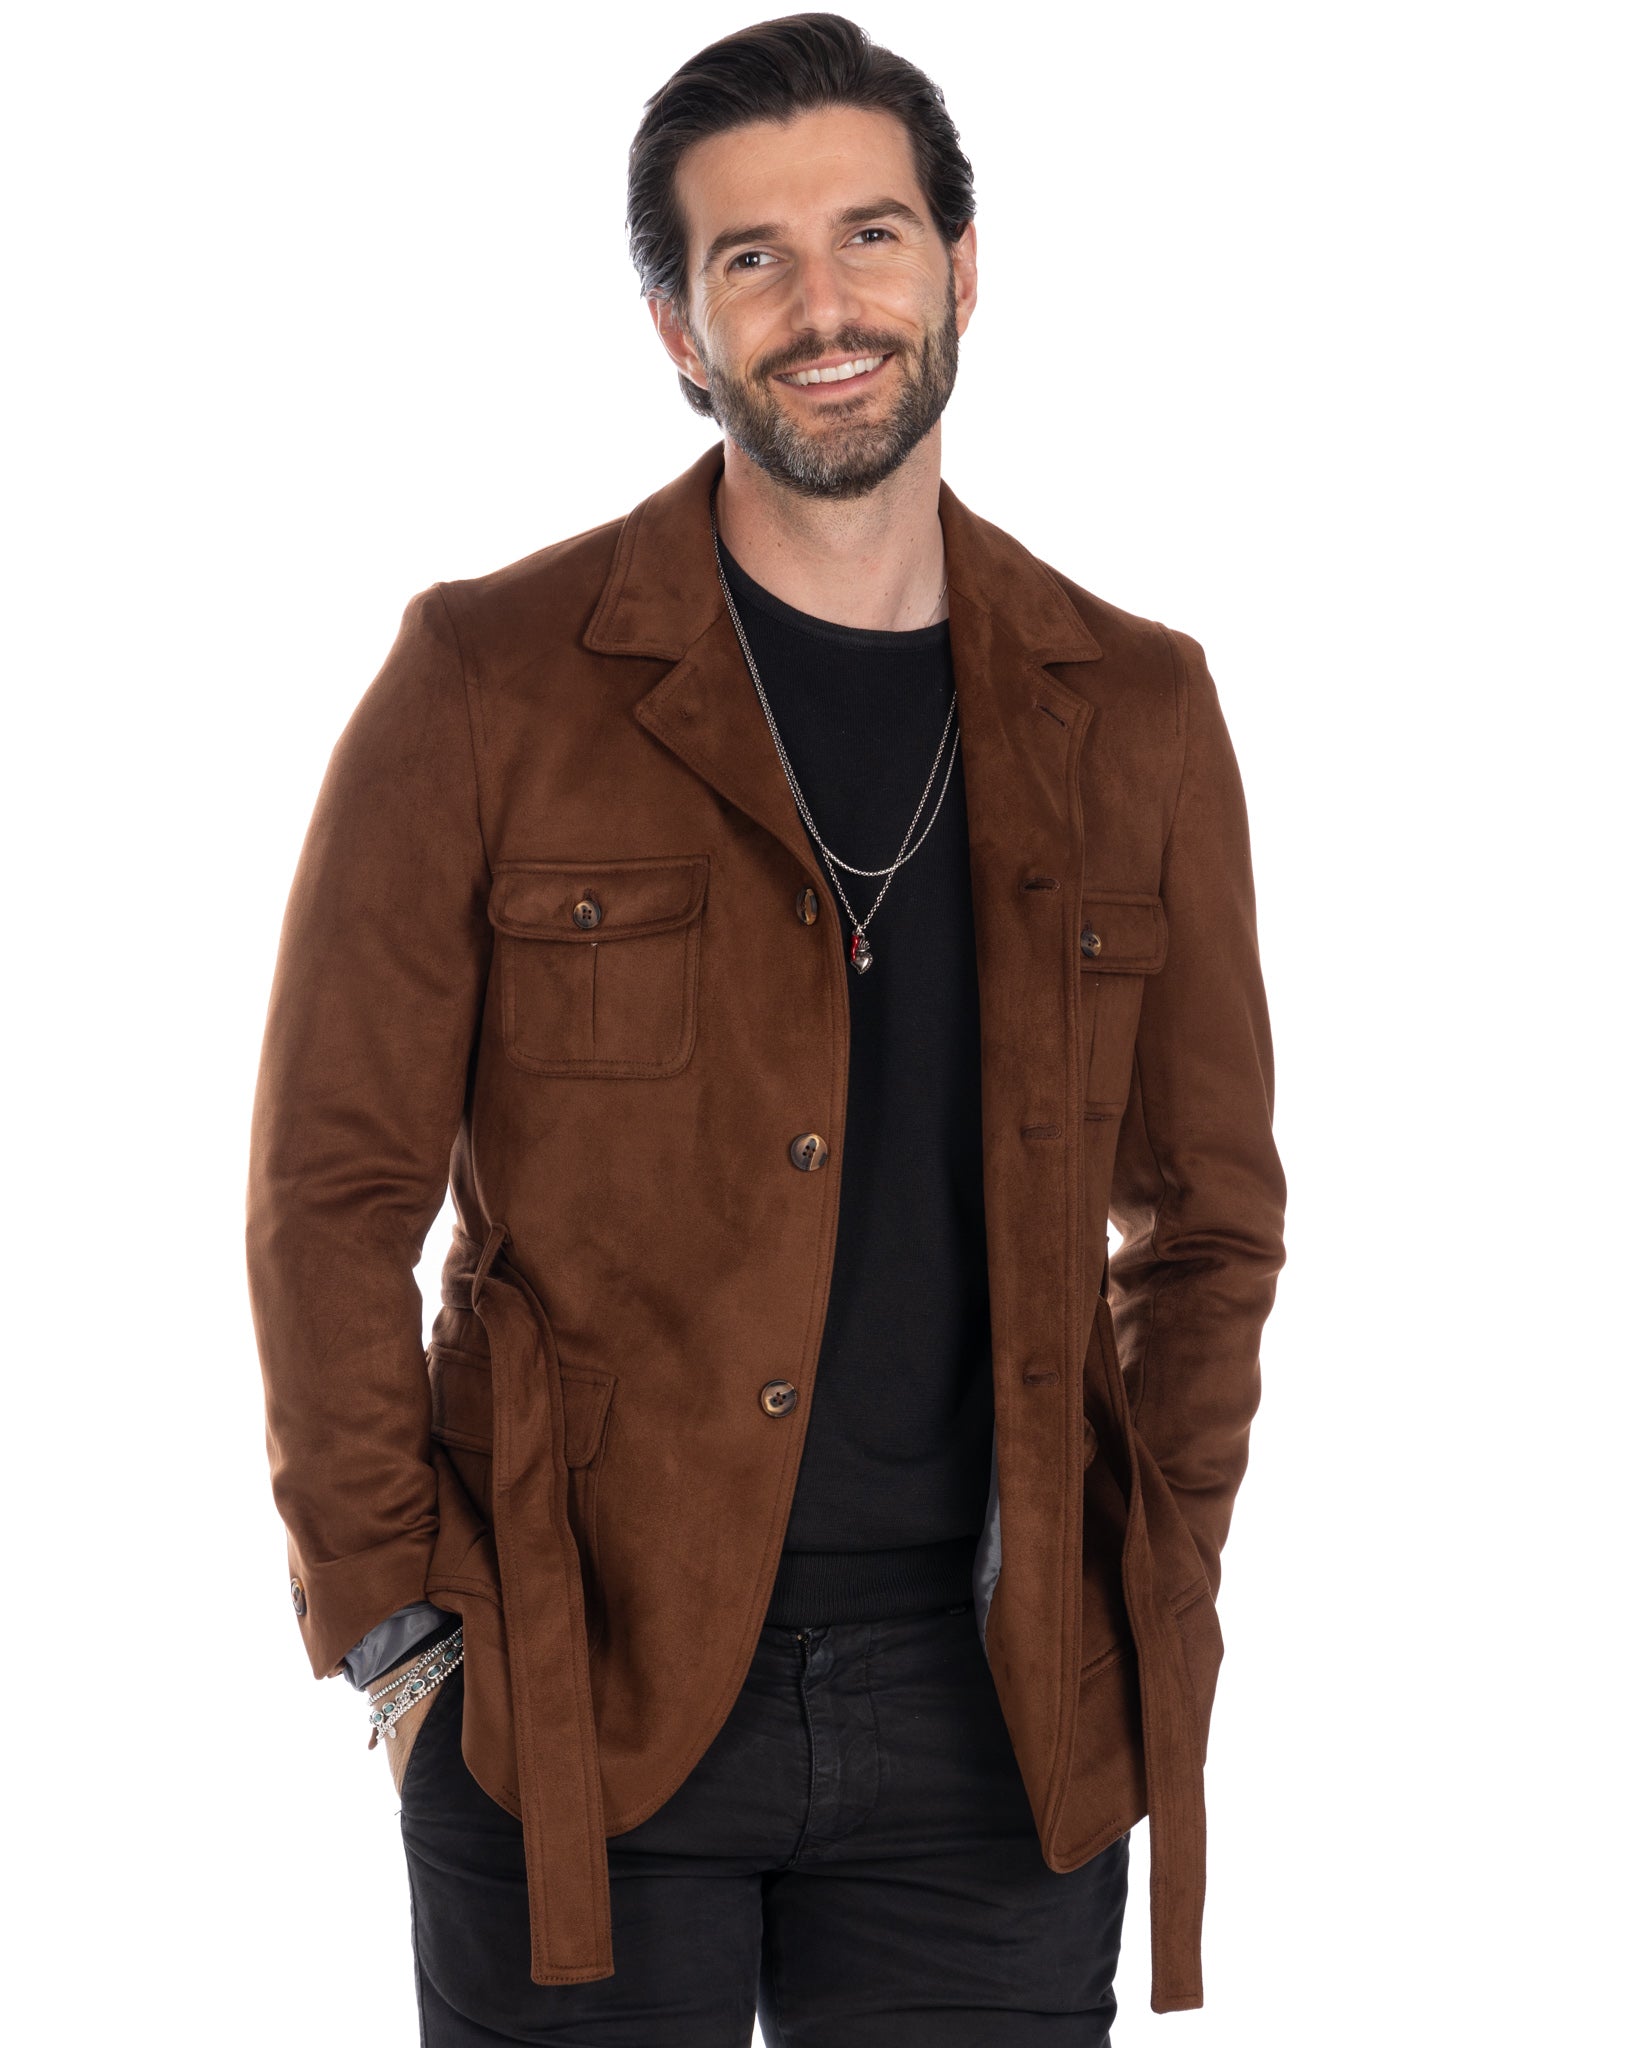 Levante - safari jacket in dark brown suede